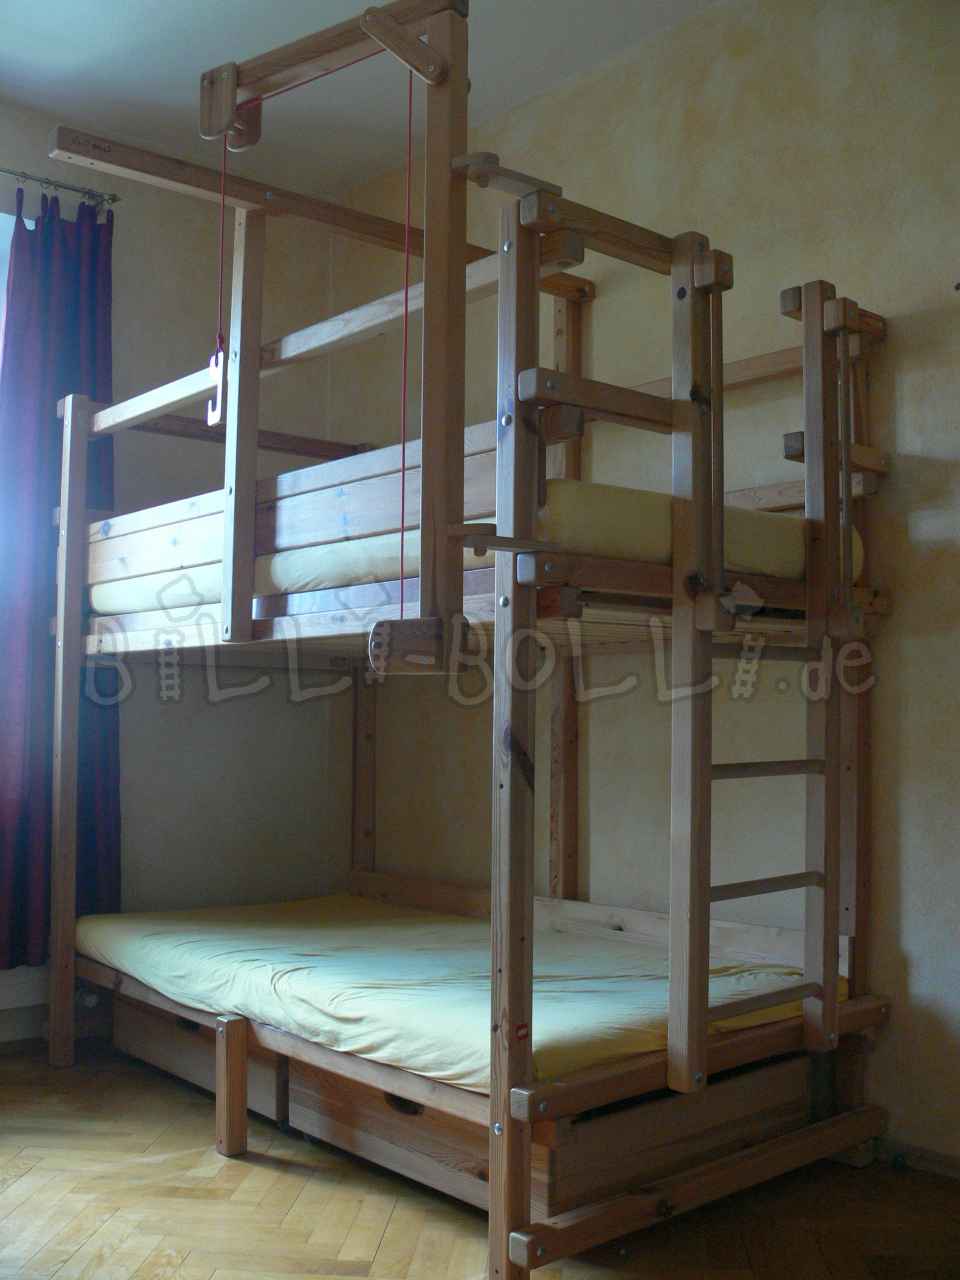 बिली-बोल्ली चारपाई बिस्तर, पाइन अनुपचारित (कोटि: चारपाई बिस्तर का इस्तेमाल किया)